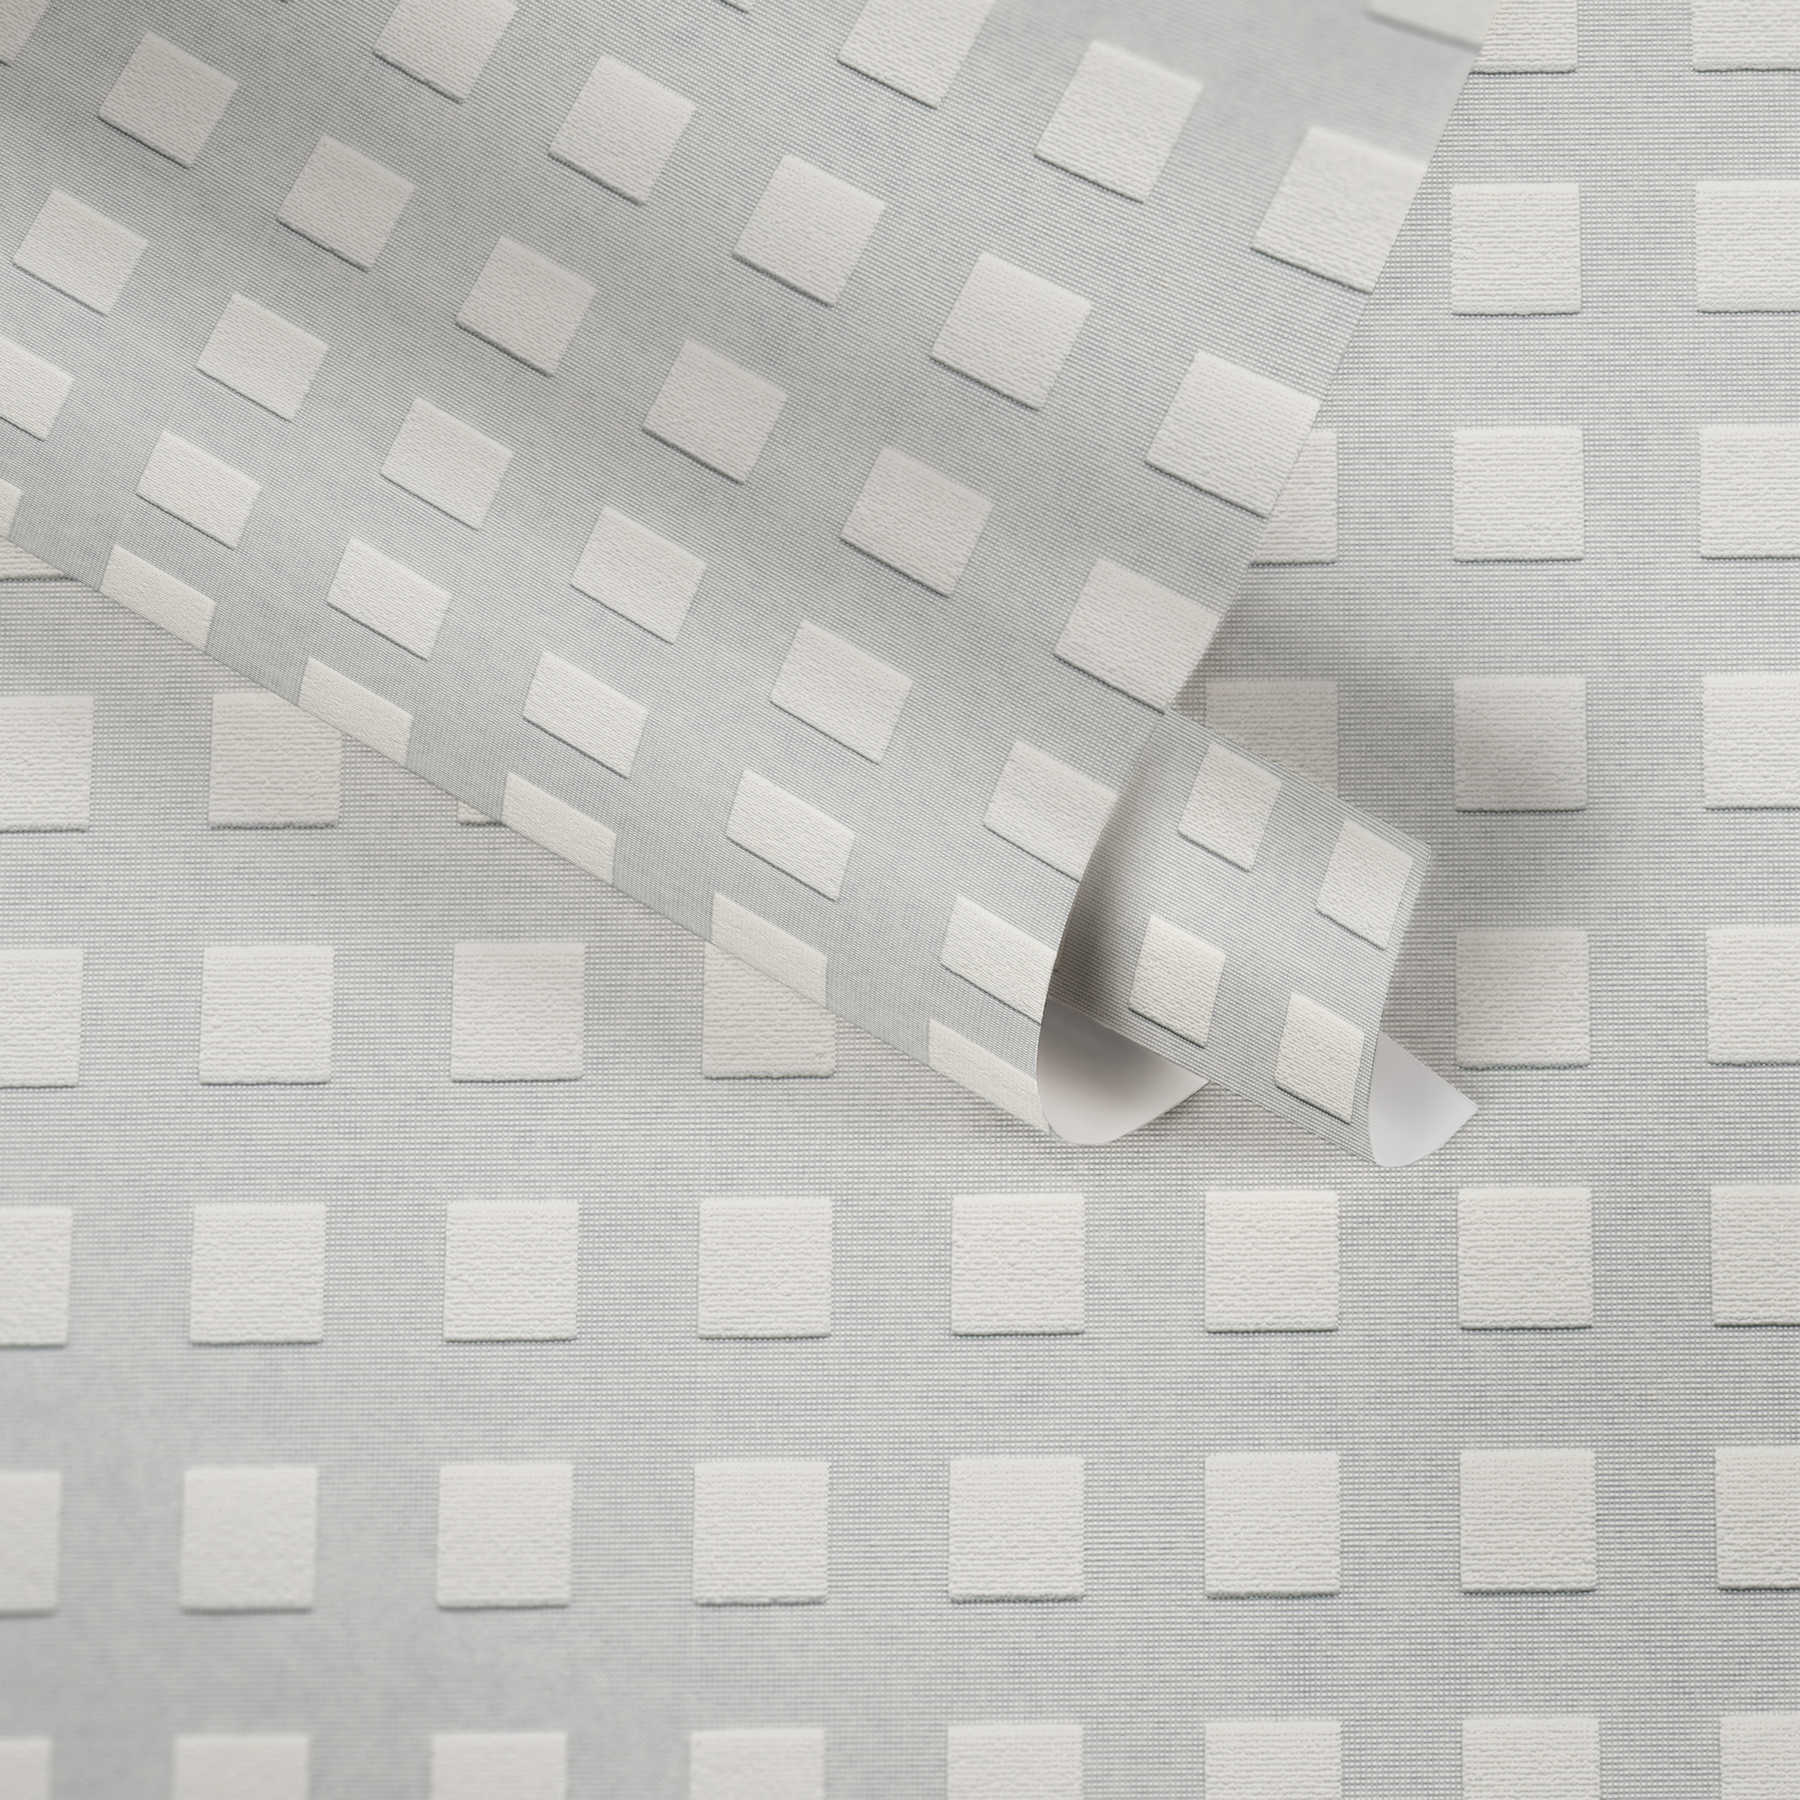             Overschilderbaar behang met 3D kubusvormig patroon - Wit
        